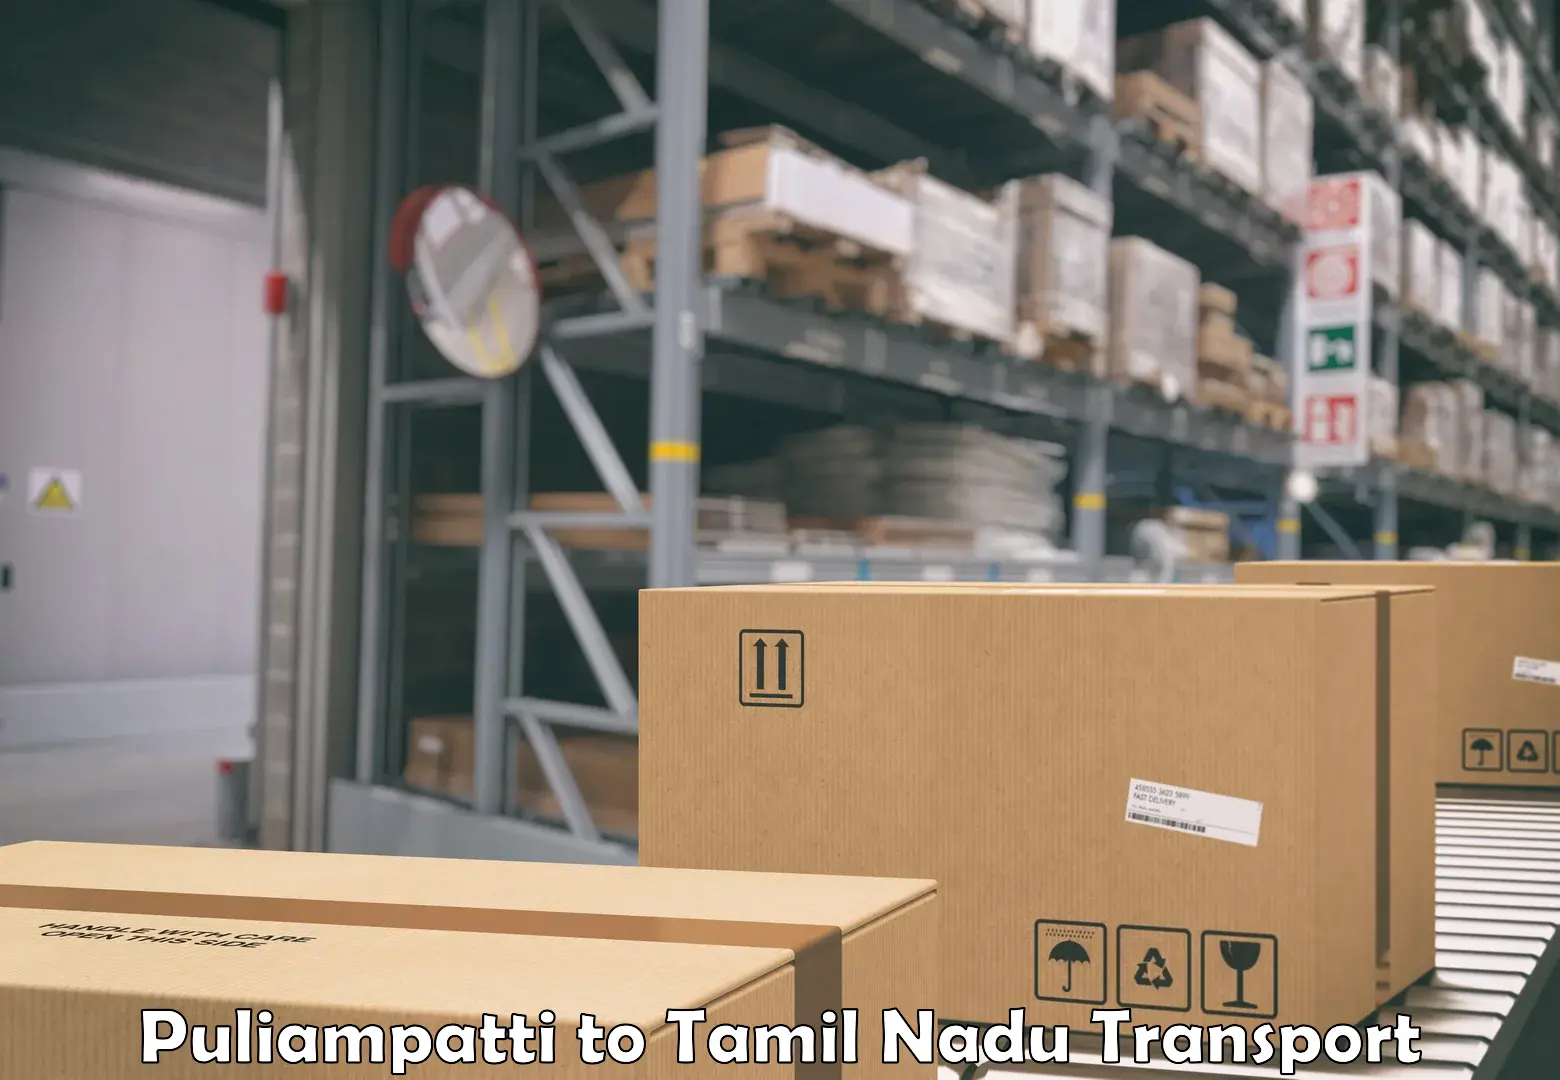 Pick up transport service Puliampatti to Tamil Nadu